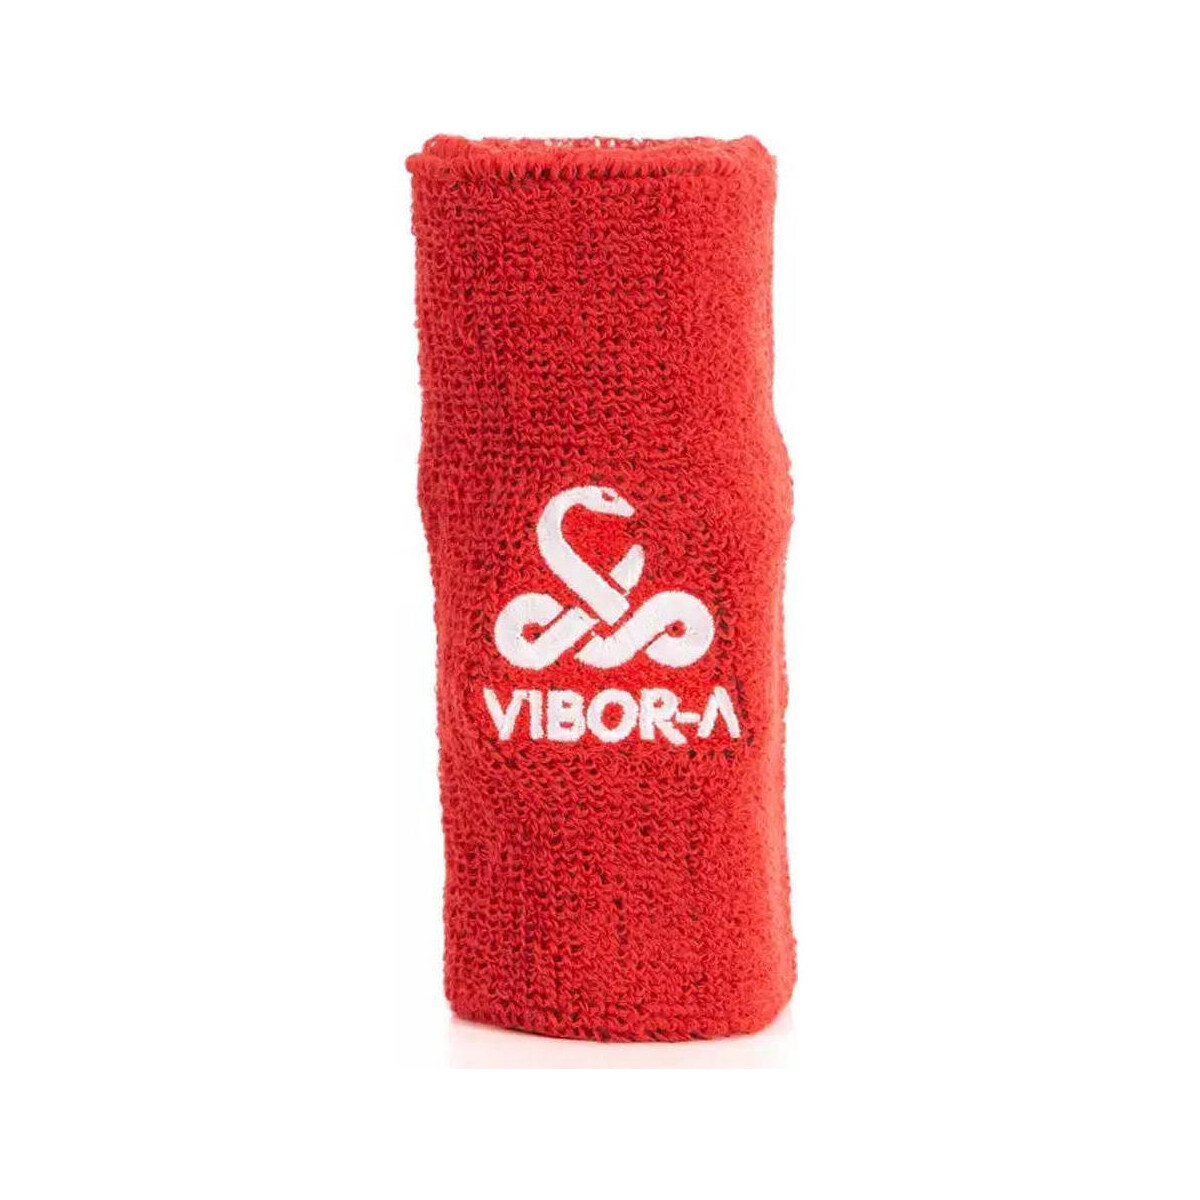 Accessoires Accessoires sport Vibora MUEQUERA ANCHA VIBOR-A Rouge